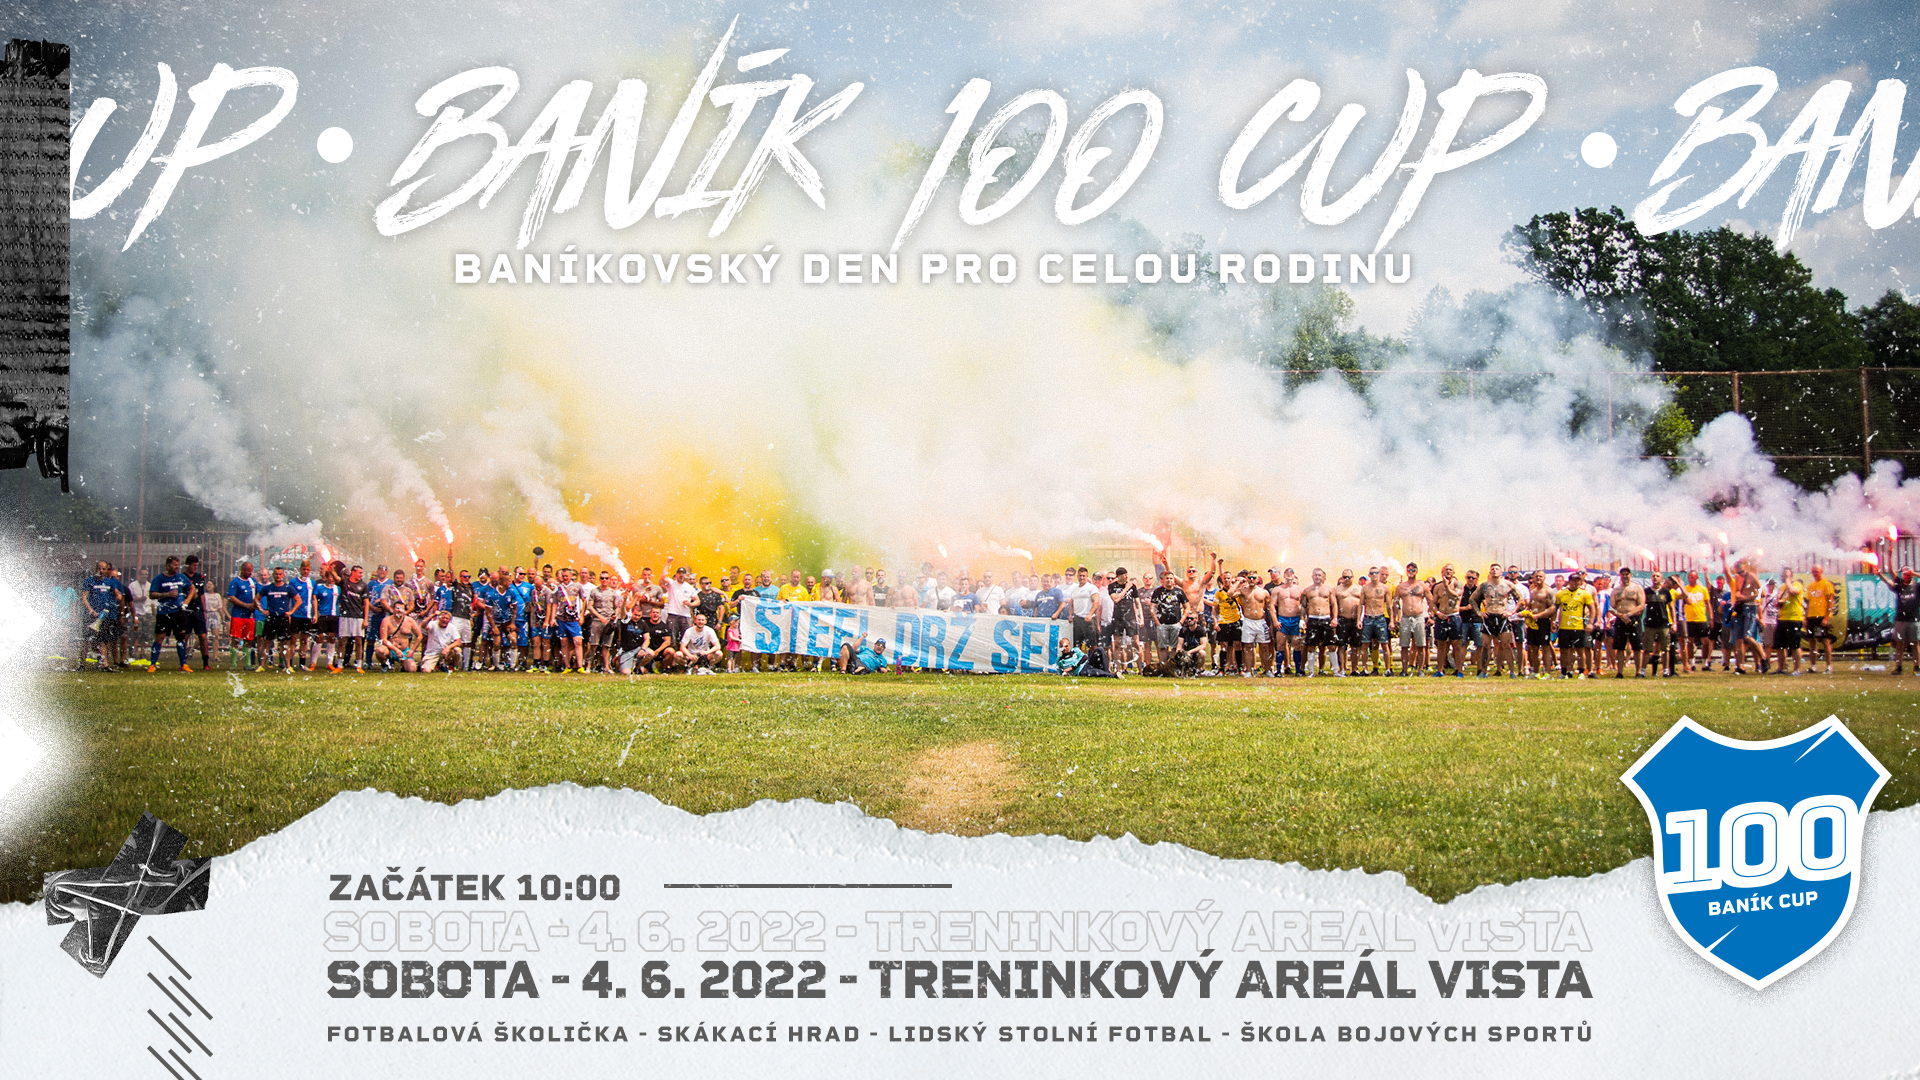 banik_100_cup kopie.jpg (1.92 MB)